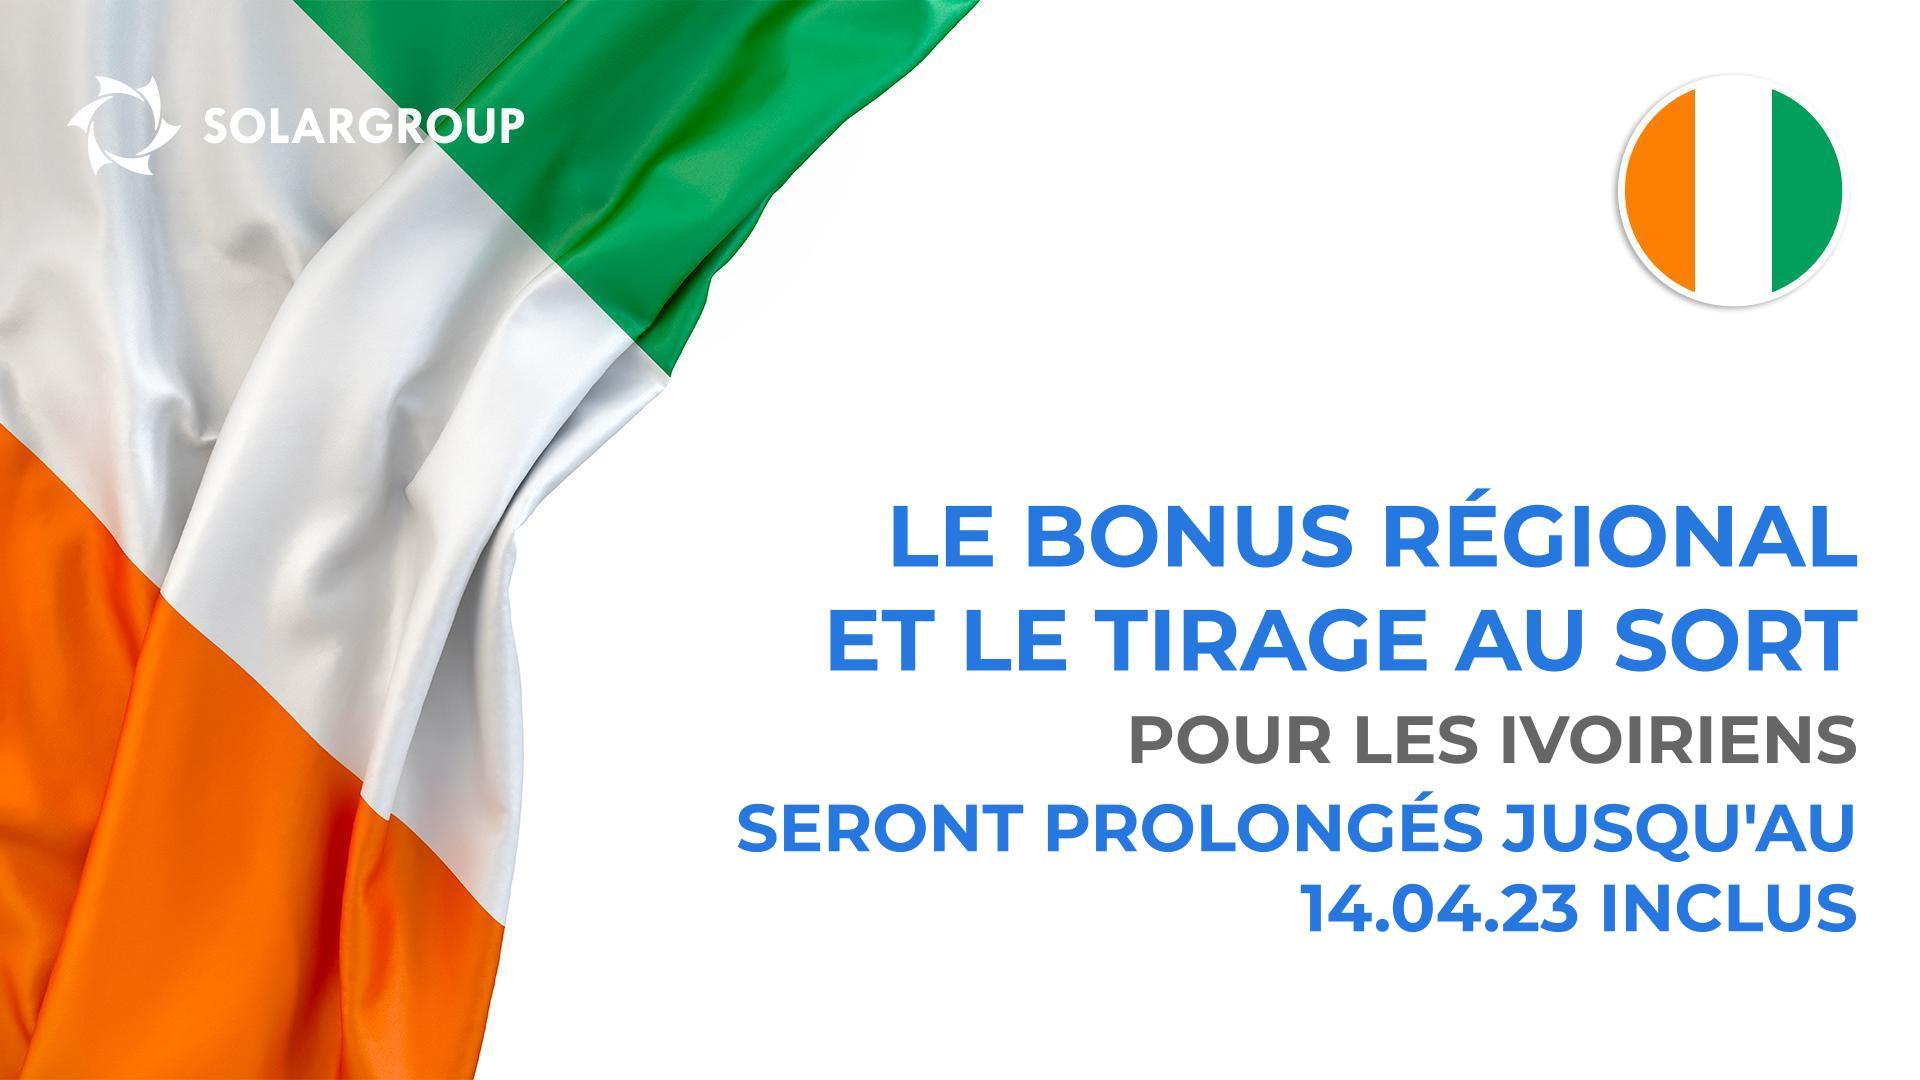 Prolongation du "Bonus régional" et du tirage au sort pour les citoyens ivoiriens jusqu'au 14 avril 2023